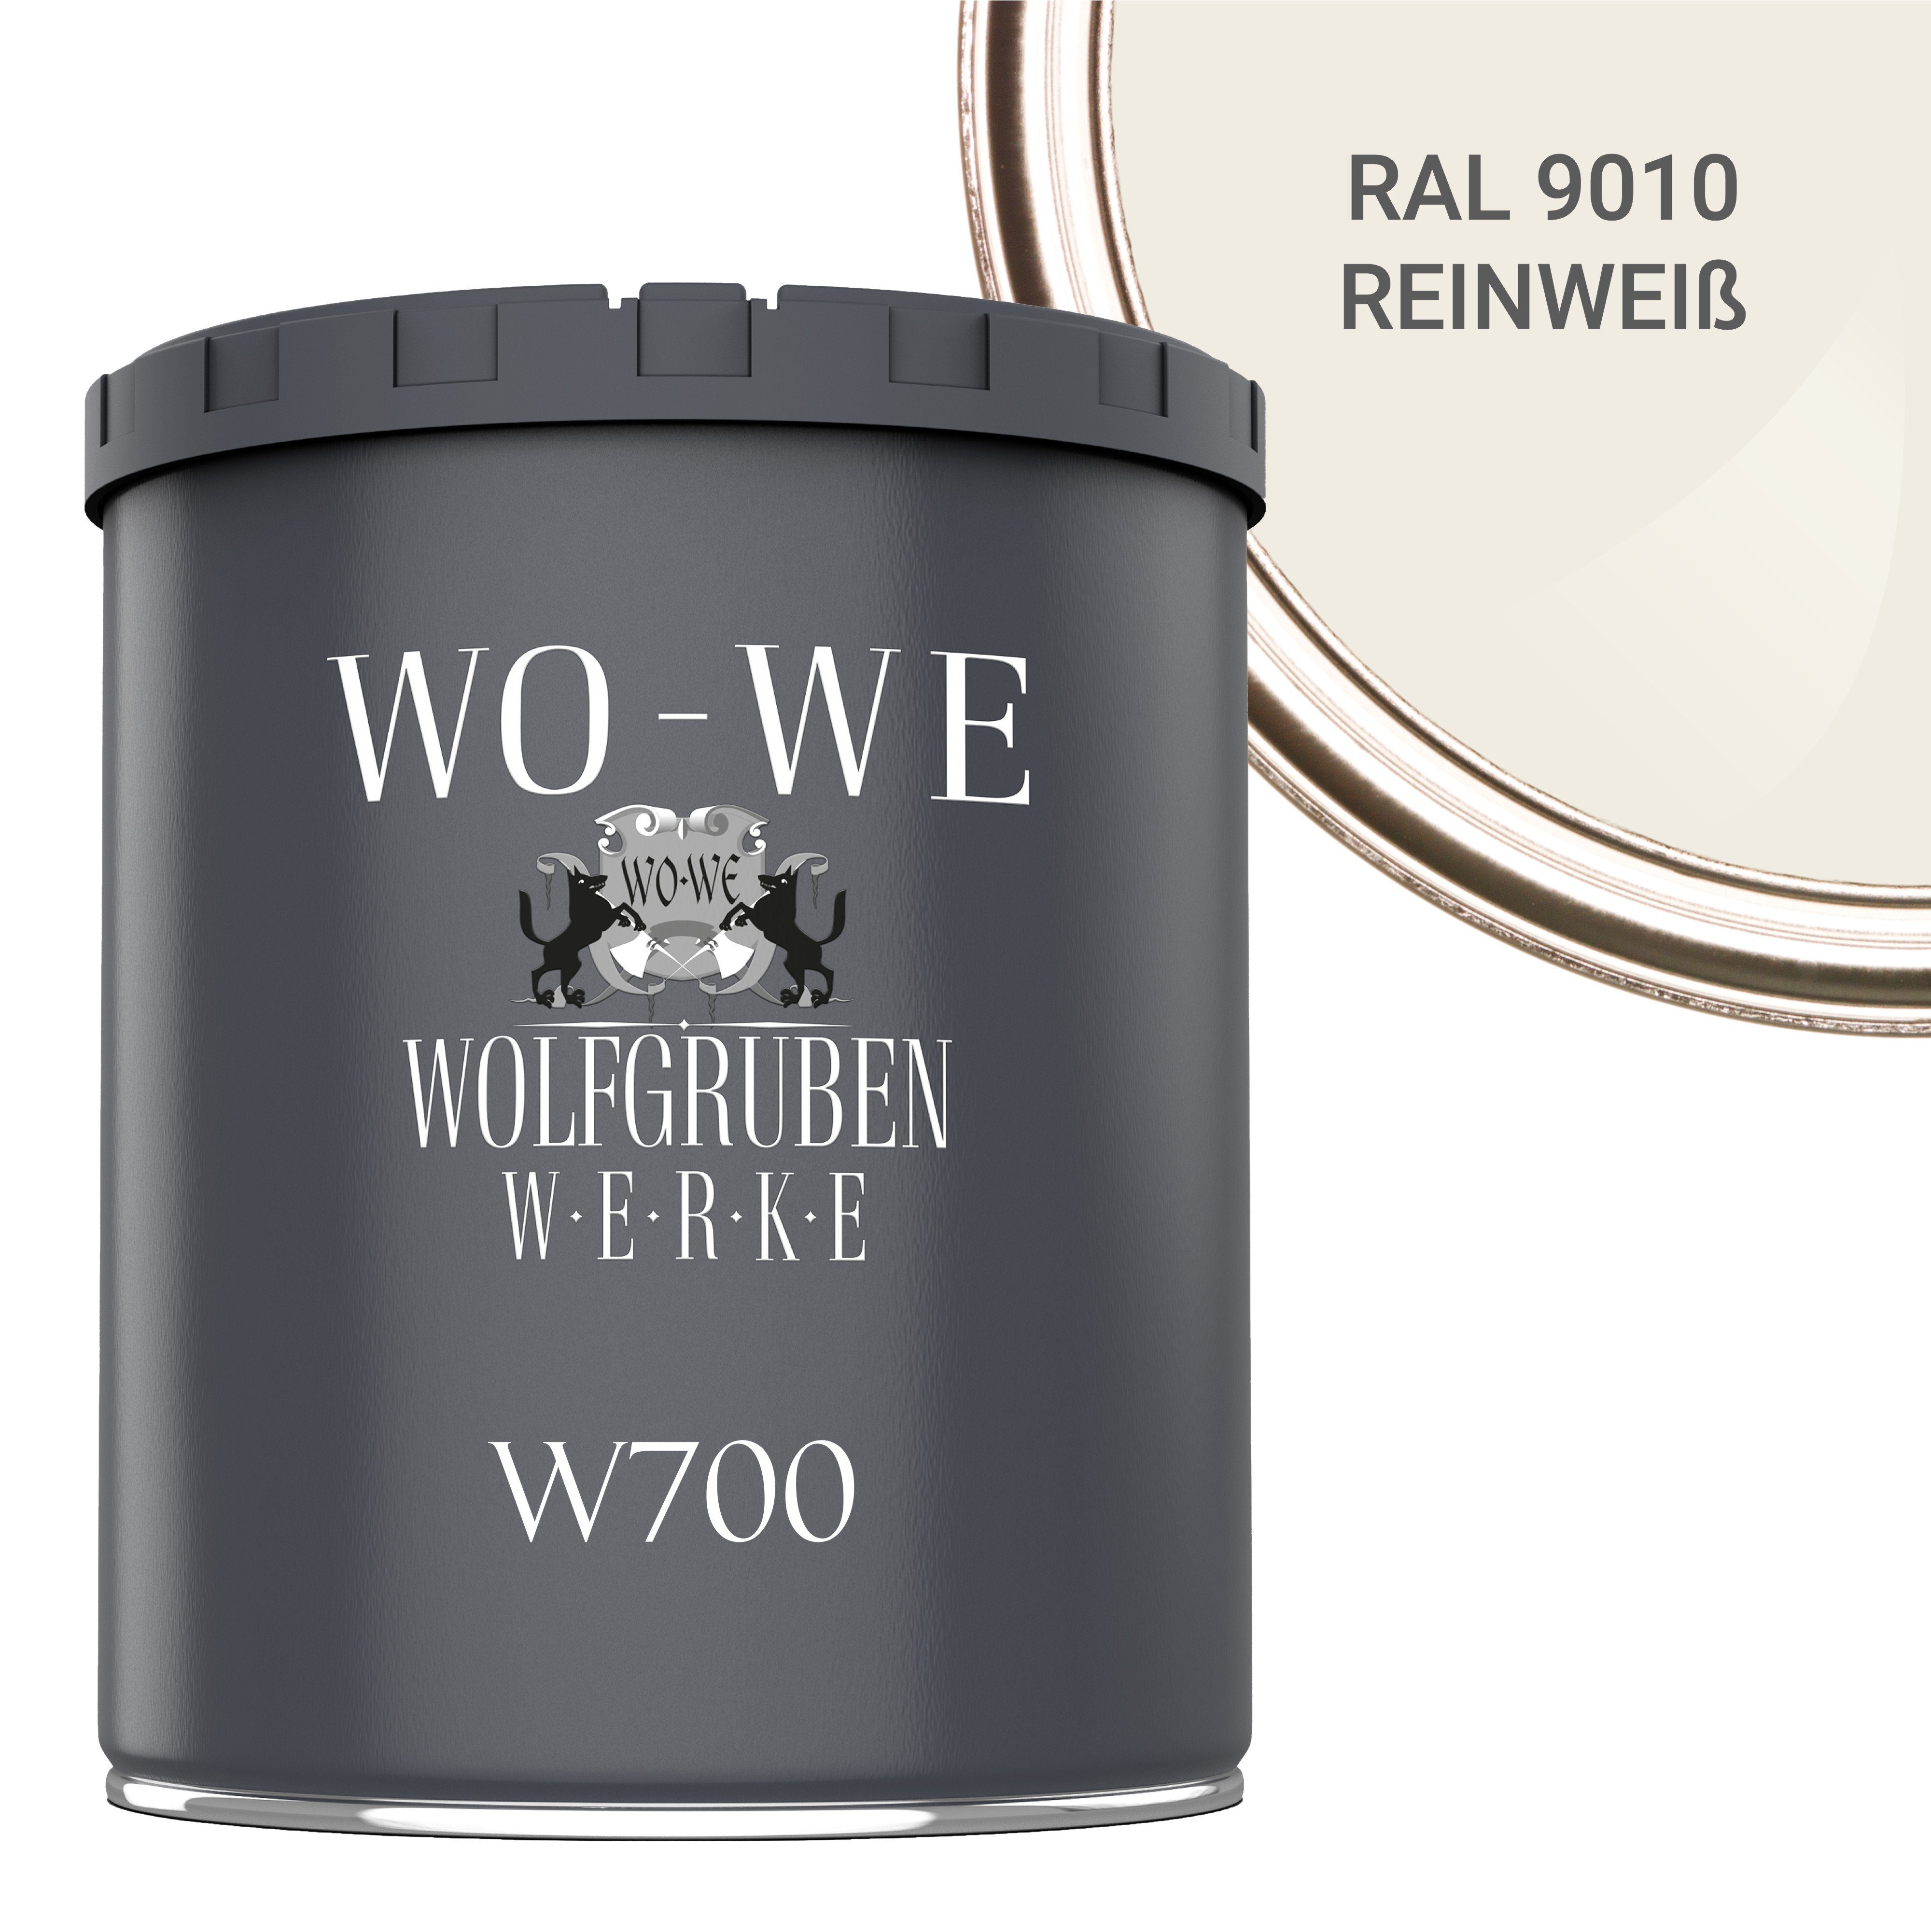 WO-WE Bodenversiegelung Betonfarbe Bodenfarbe Bodenbeschichtung W700, 1-10L, Seidenglänzend RAL 9010 Reinweiss